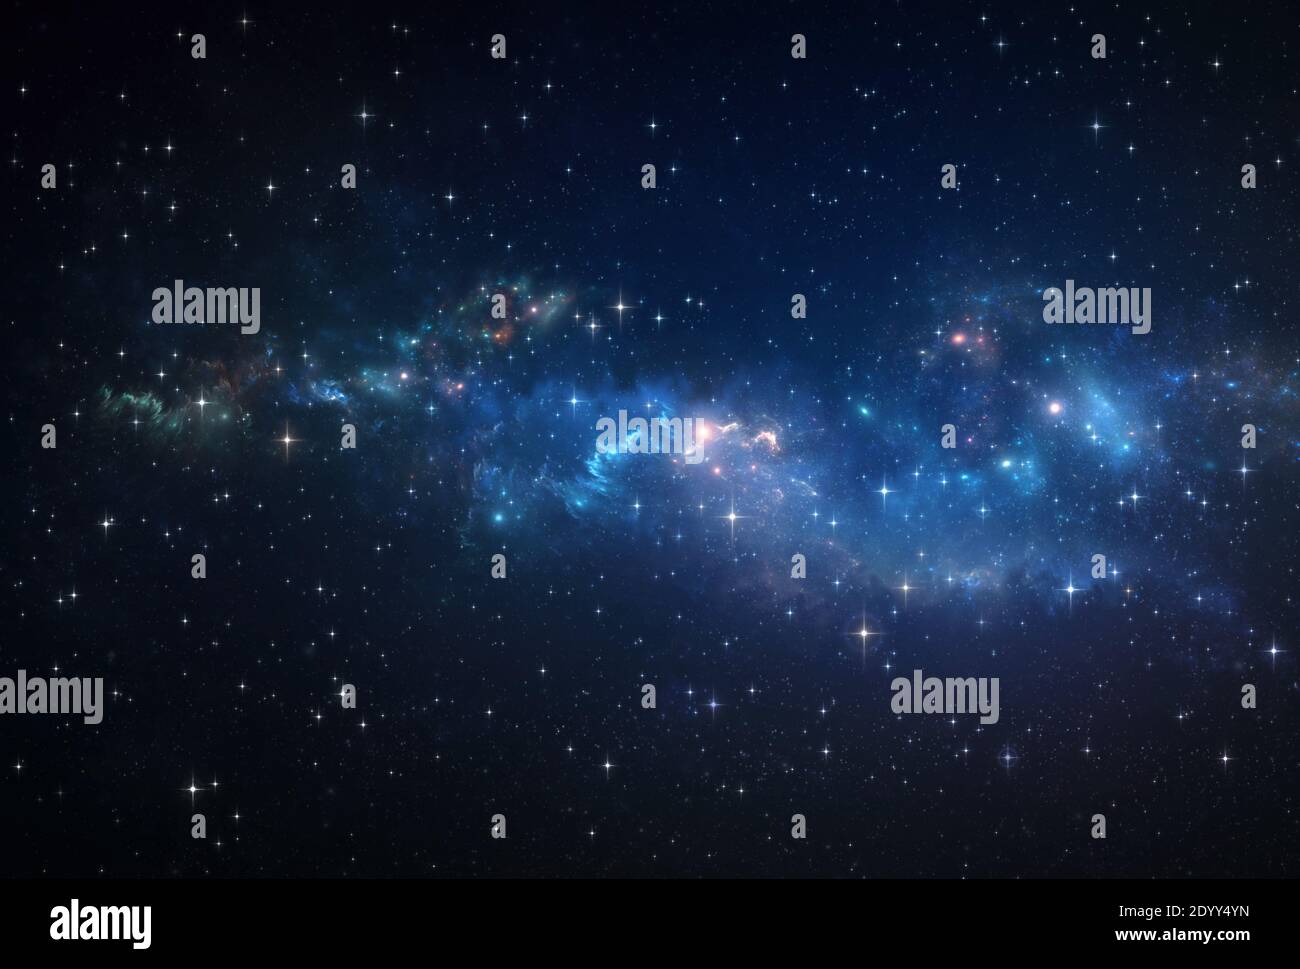 Galaxia, nebulosa y constelaciones de estrellas en el Universo. Fondo de espacio profundo. Foto de stock